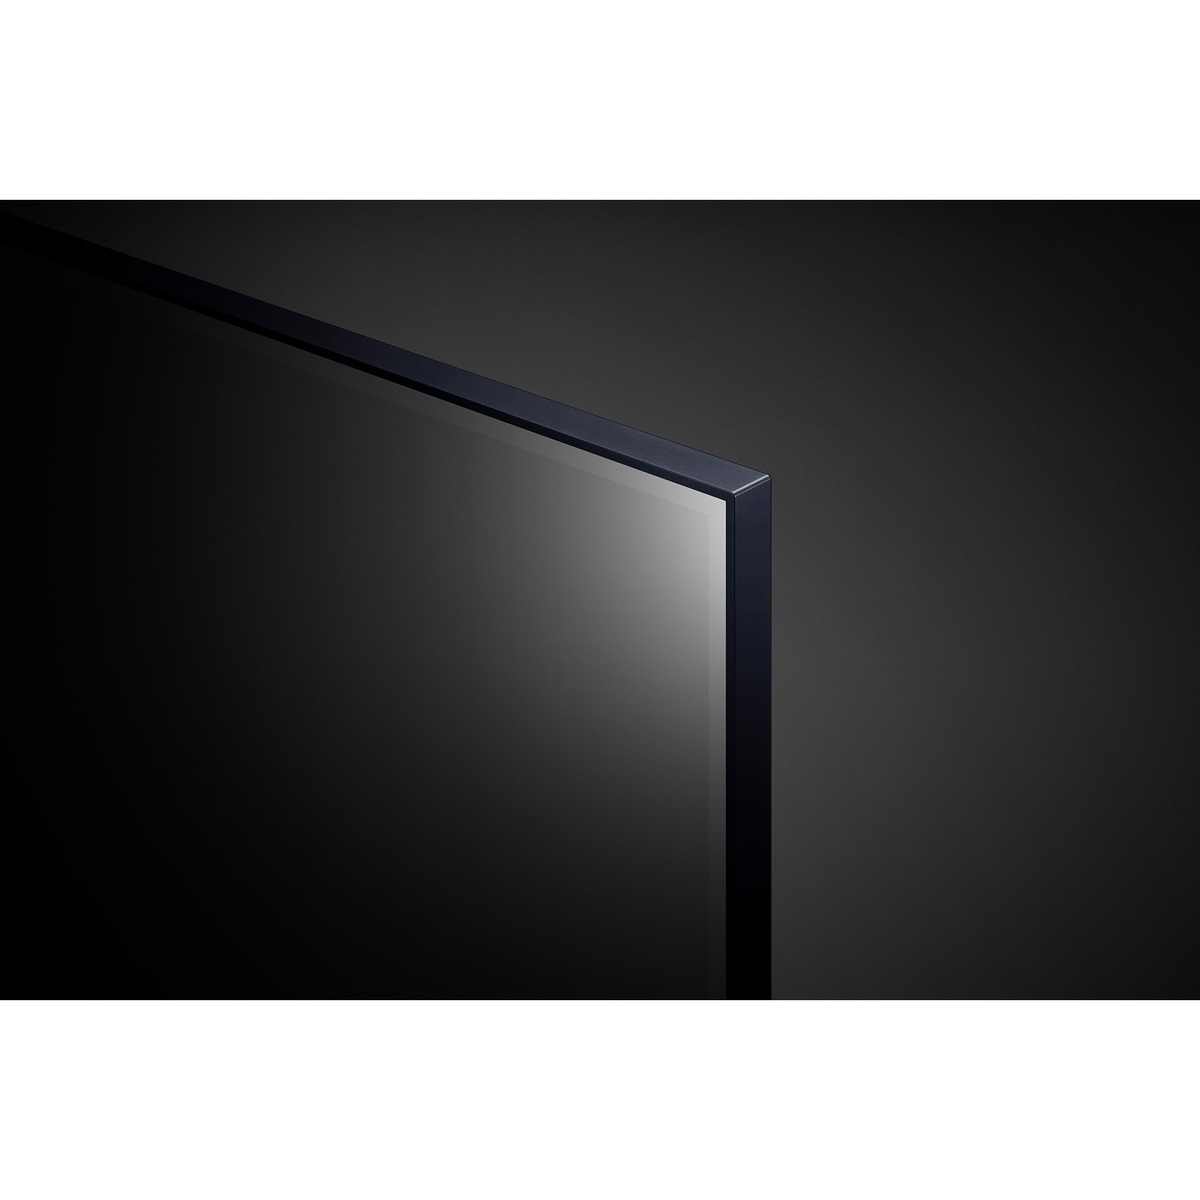 إل جي تلفزيون نانو سيل 65 بوصة سلسة نانو 79، جديد 2022، تصميم شاشة سينمائي 4K أكتف بنطاق ديناميكي عالي webOS مع تقنية ThinQ AI - 65NANO796QA